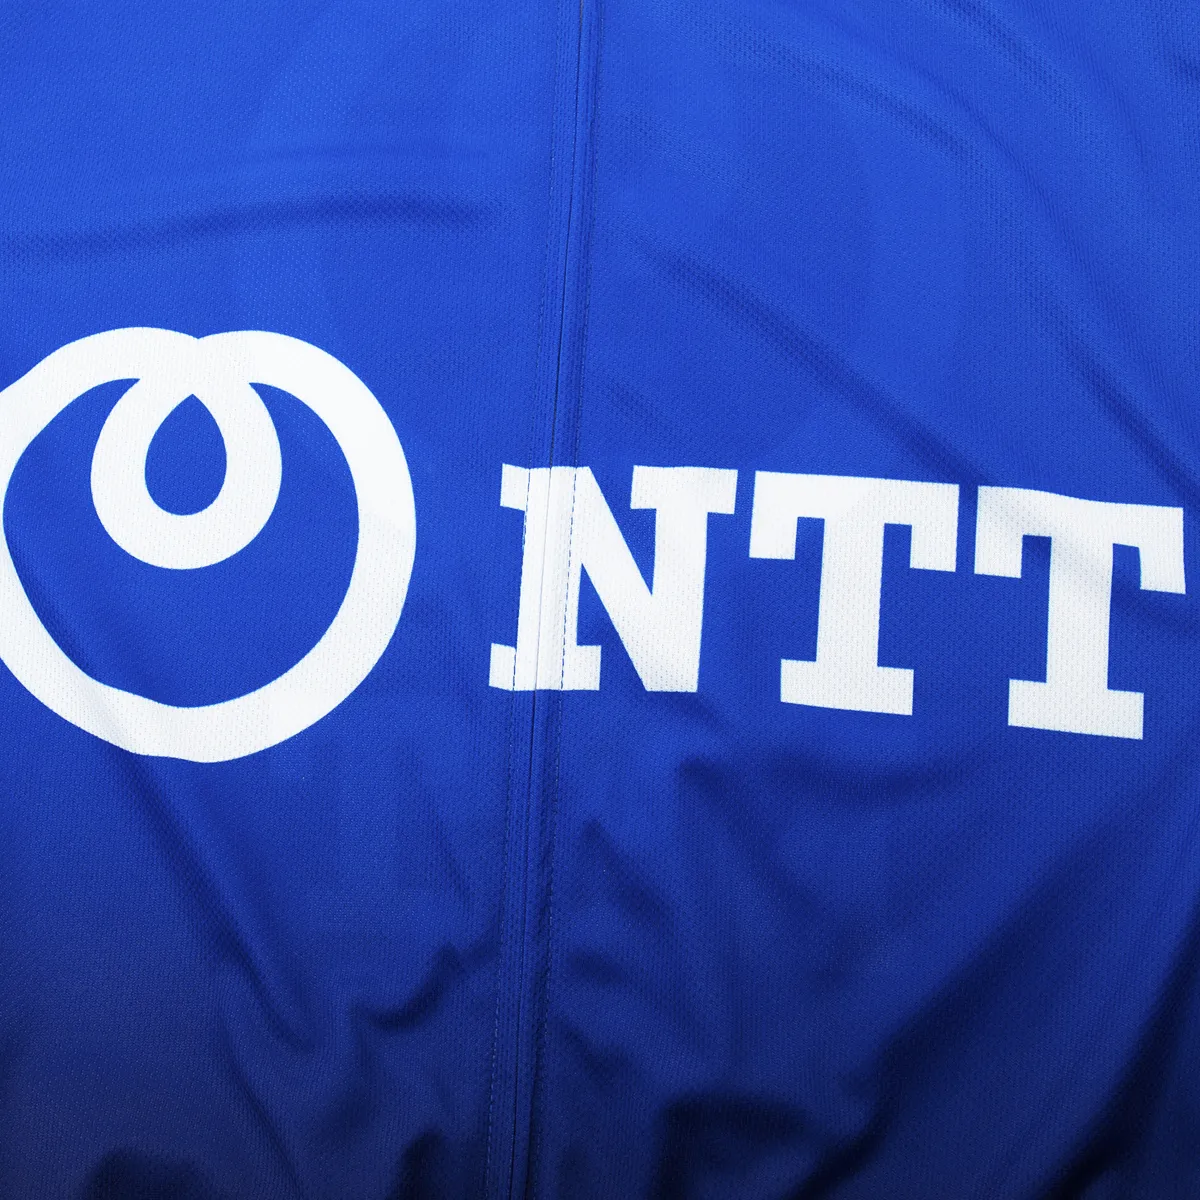 Nouveau 2021 Équipe NTT Big Cycling Jersey Set Racing Bicycle Vêtements Uniform Men Summer MTB BORTS FULL Set Maglia Ciclismo256g